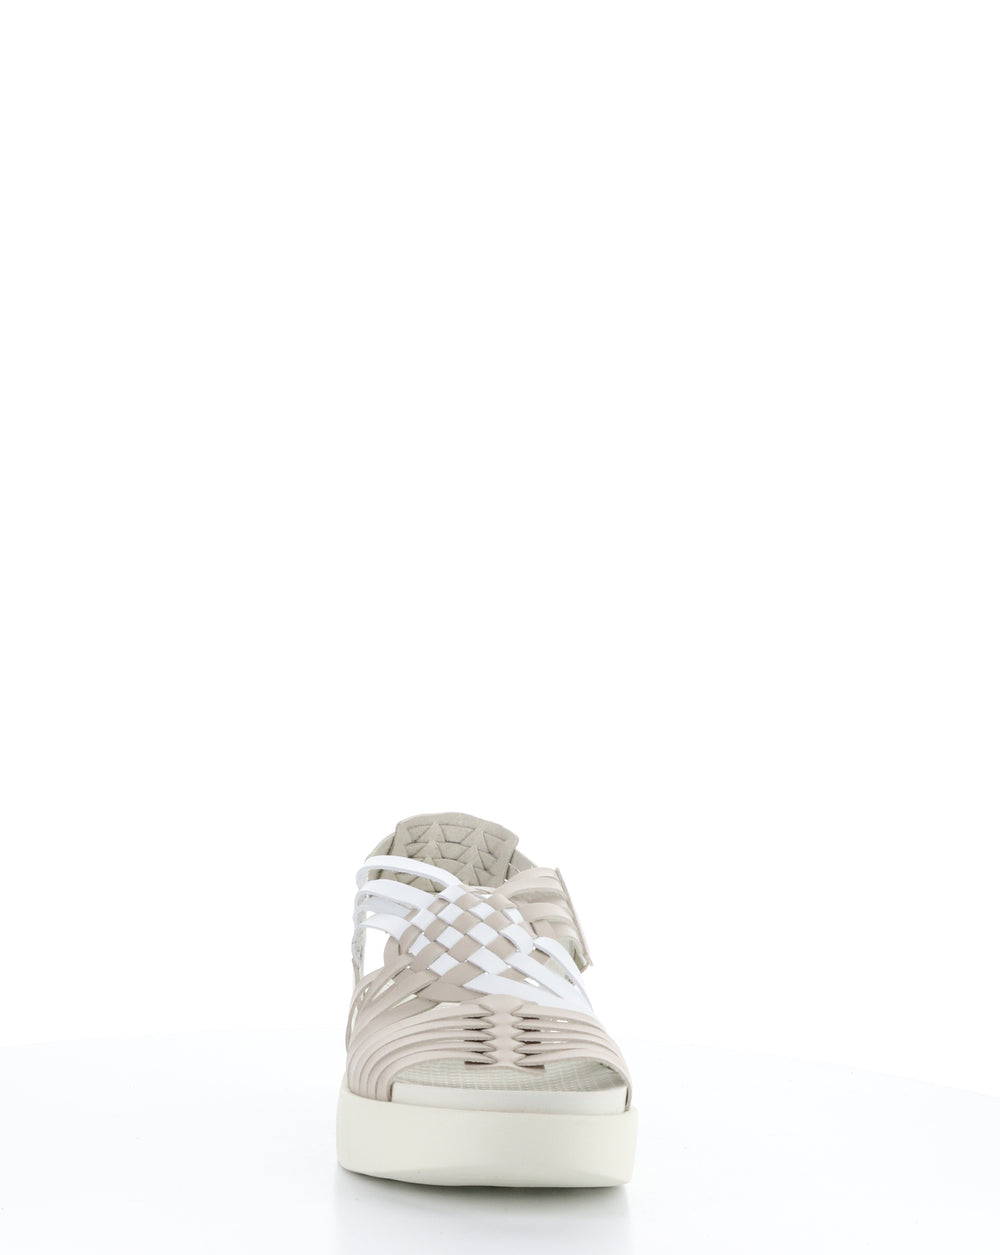 RIZER BEIGE/WHITE Round Toe Sandals